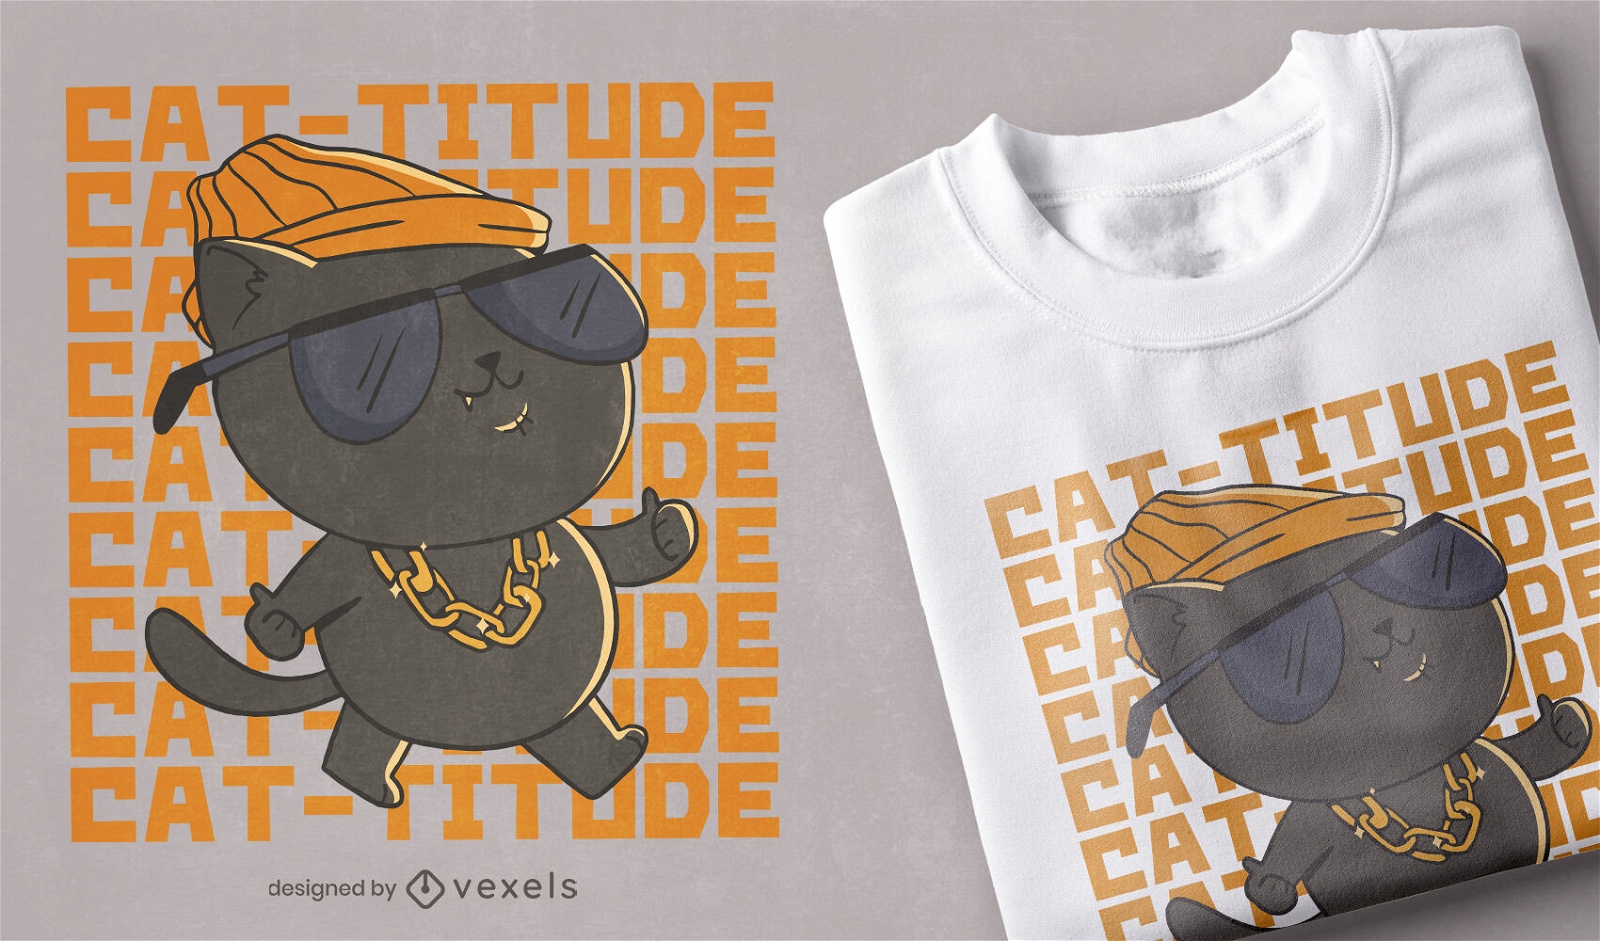 Cat-titude Katzen-T-Shirt-Design